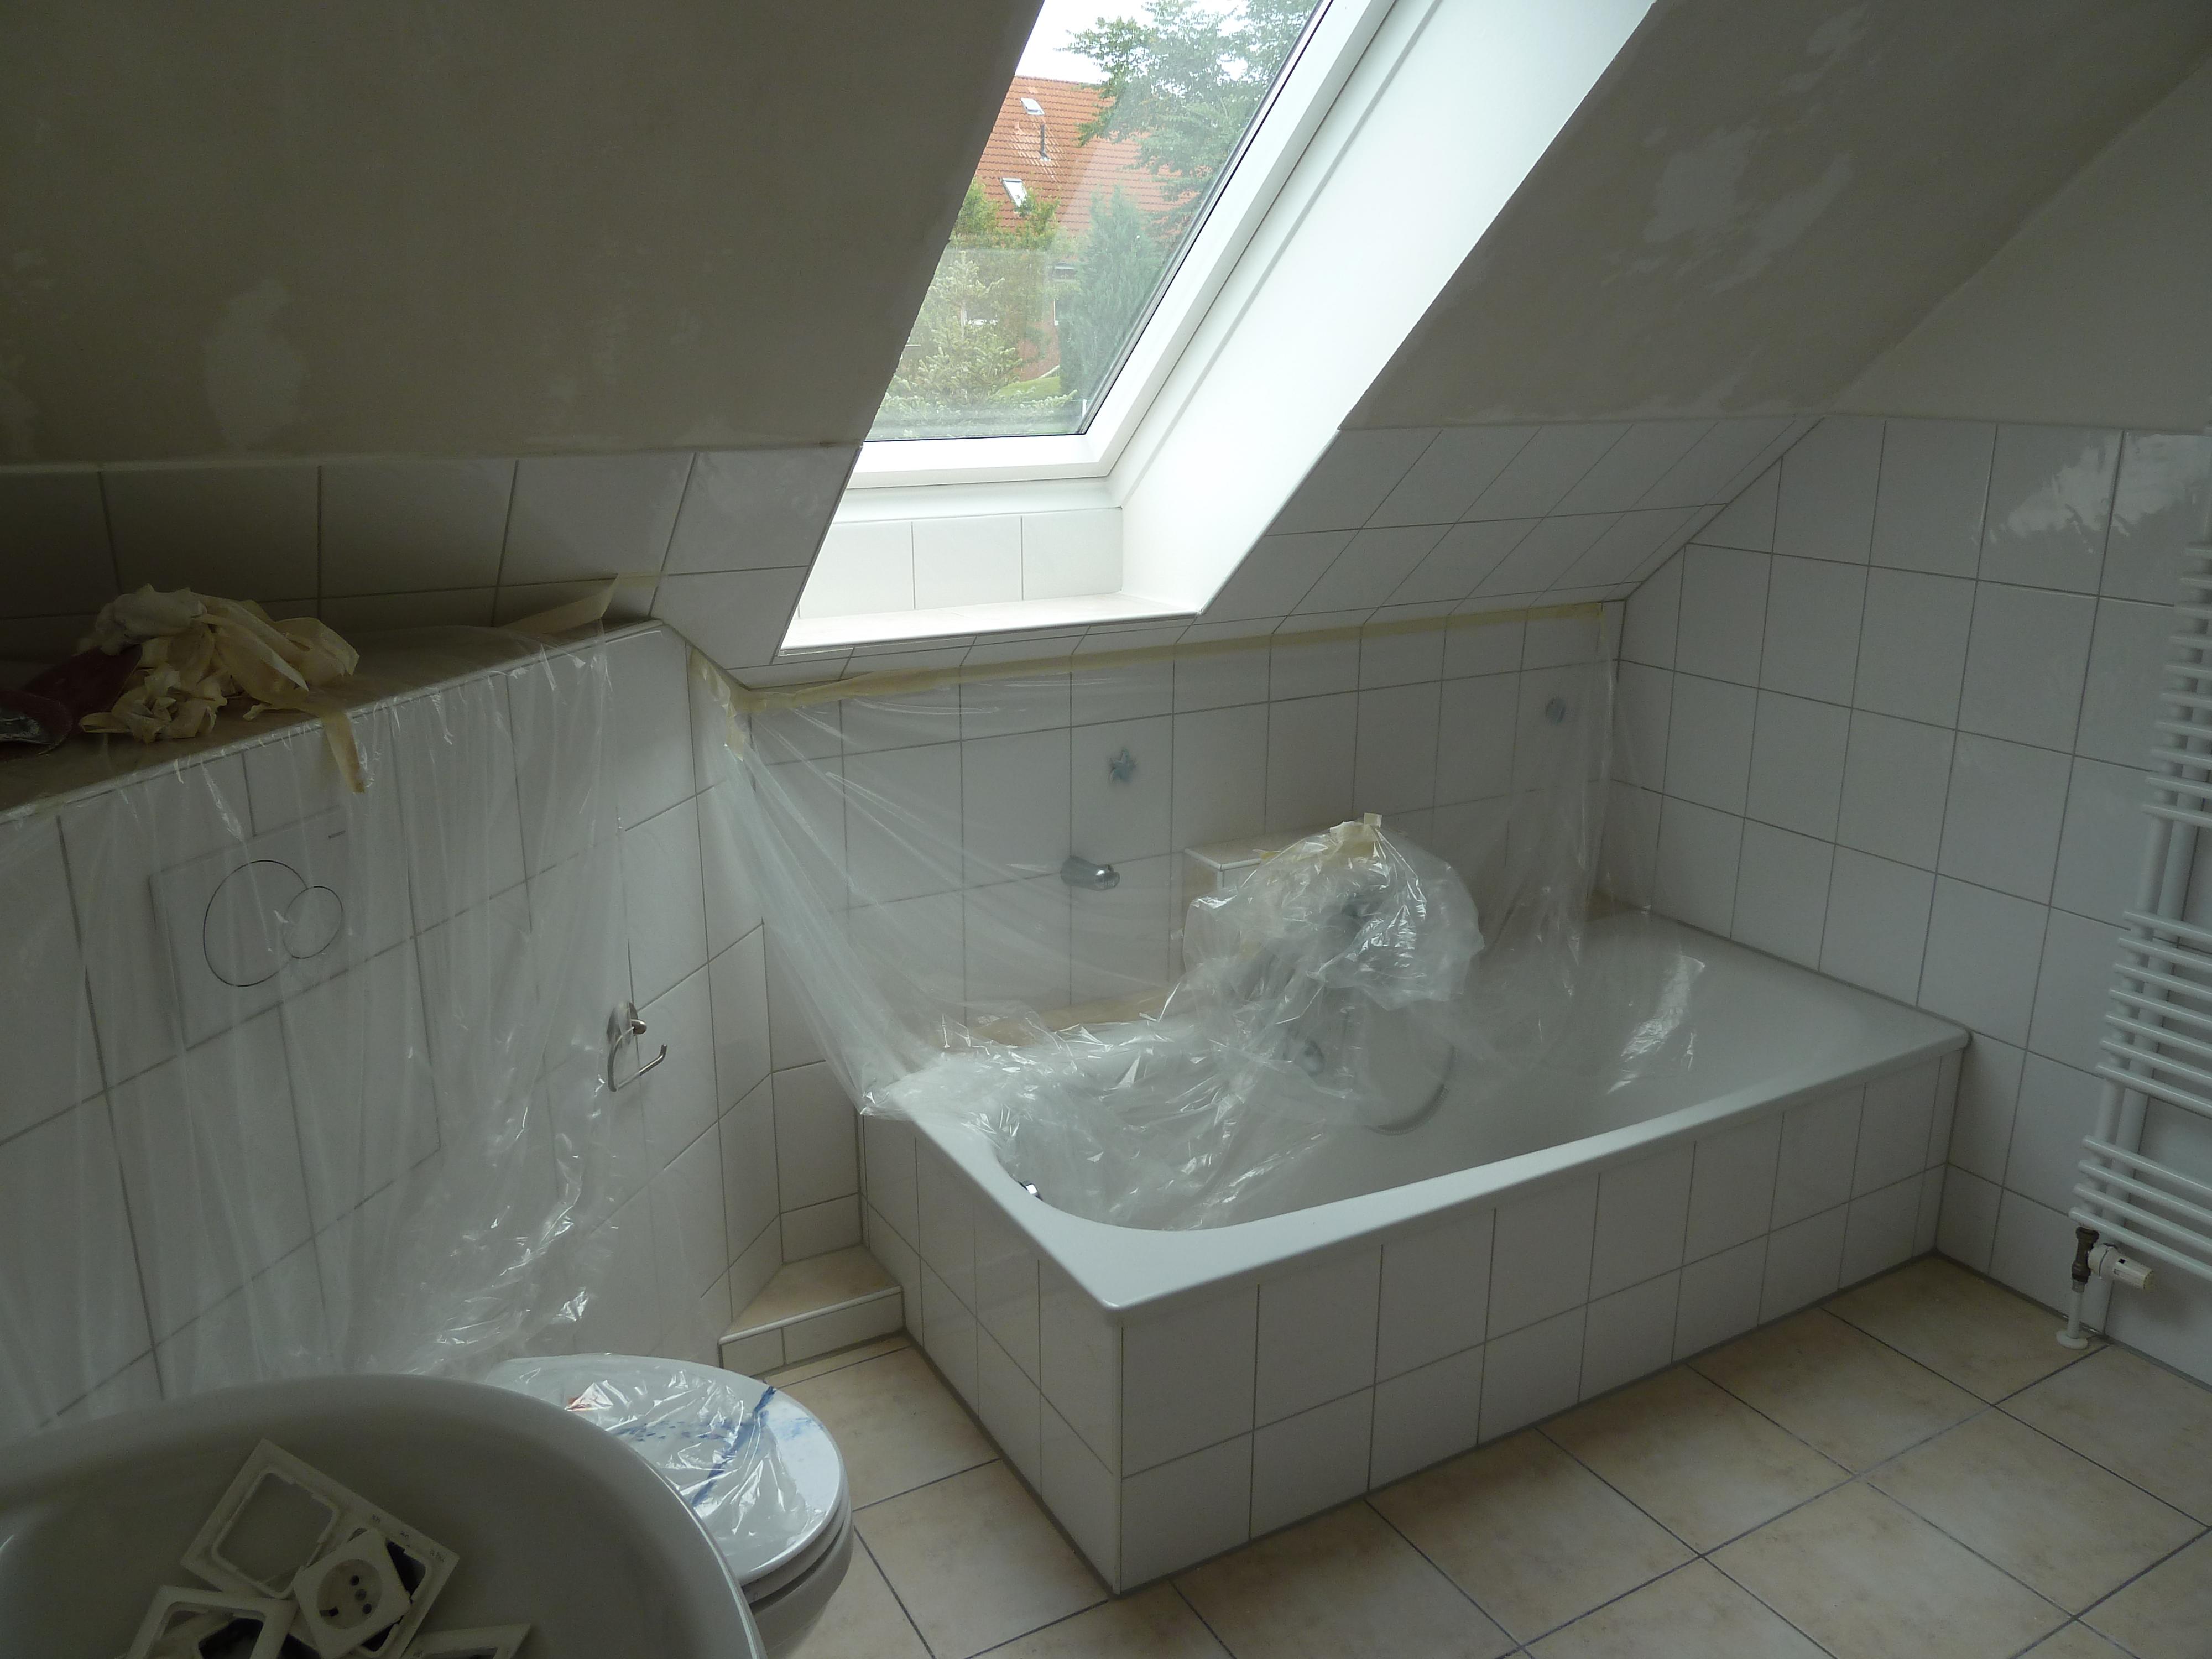 Badezimmer vorher #ferienhaus #ferienwohnung ©MK ImmoPromotion, Kiel